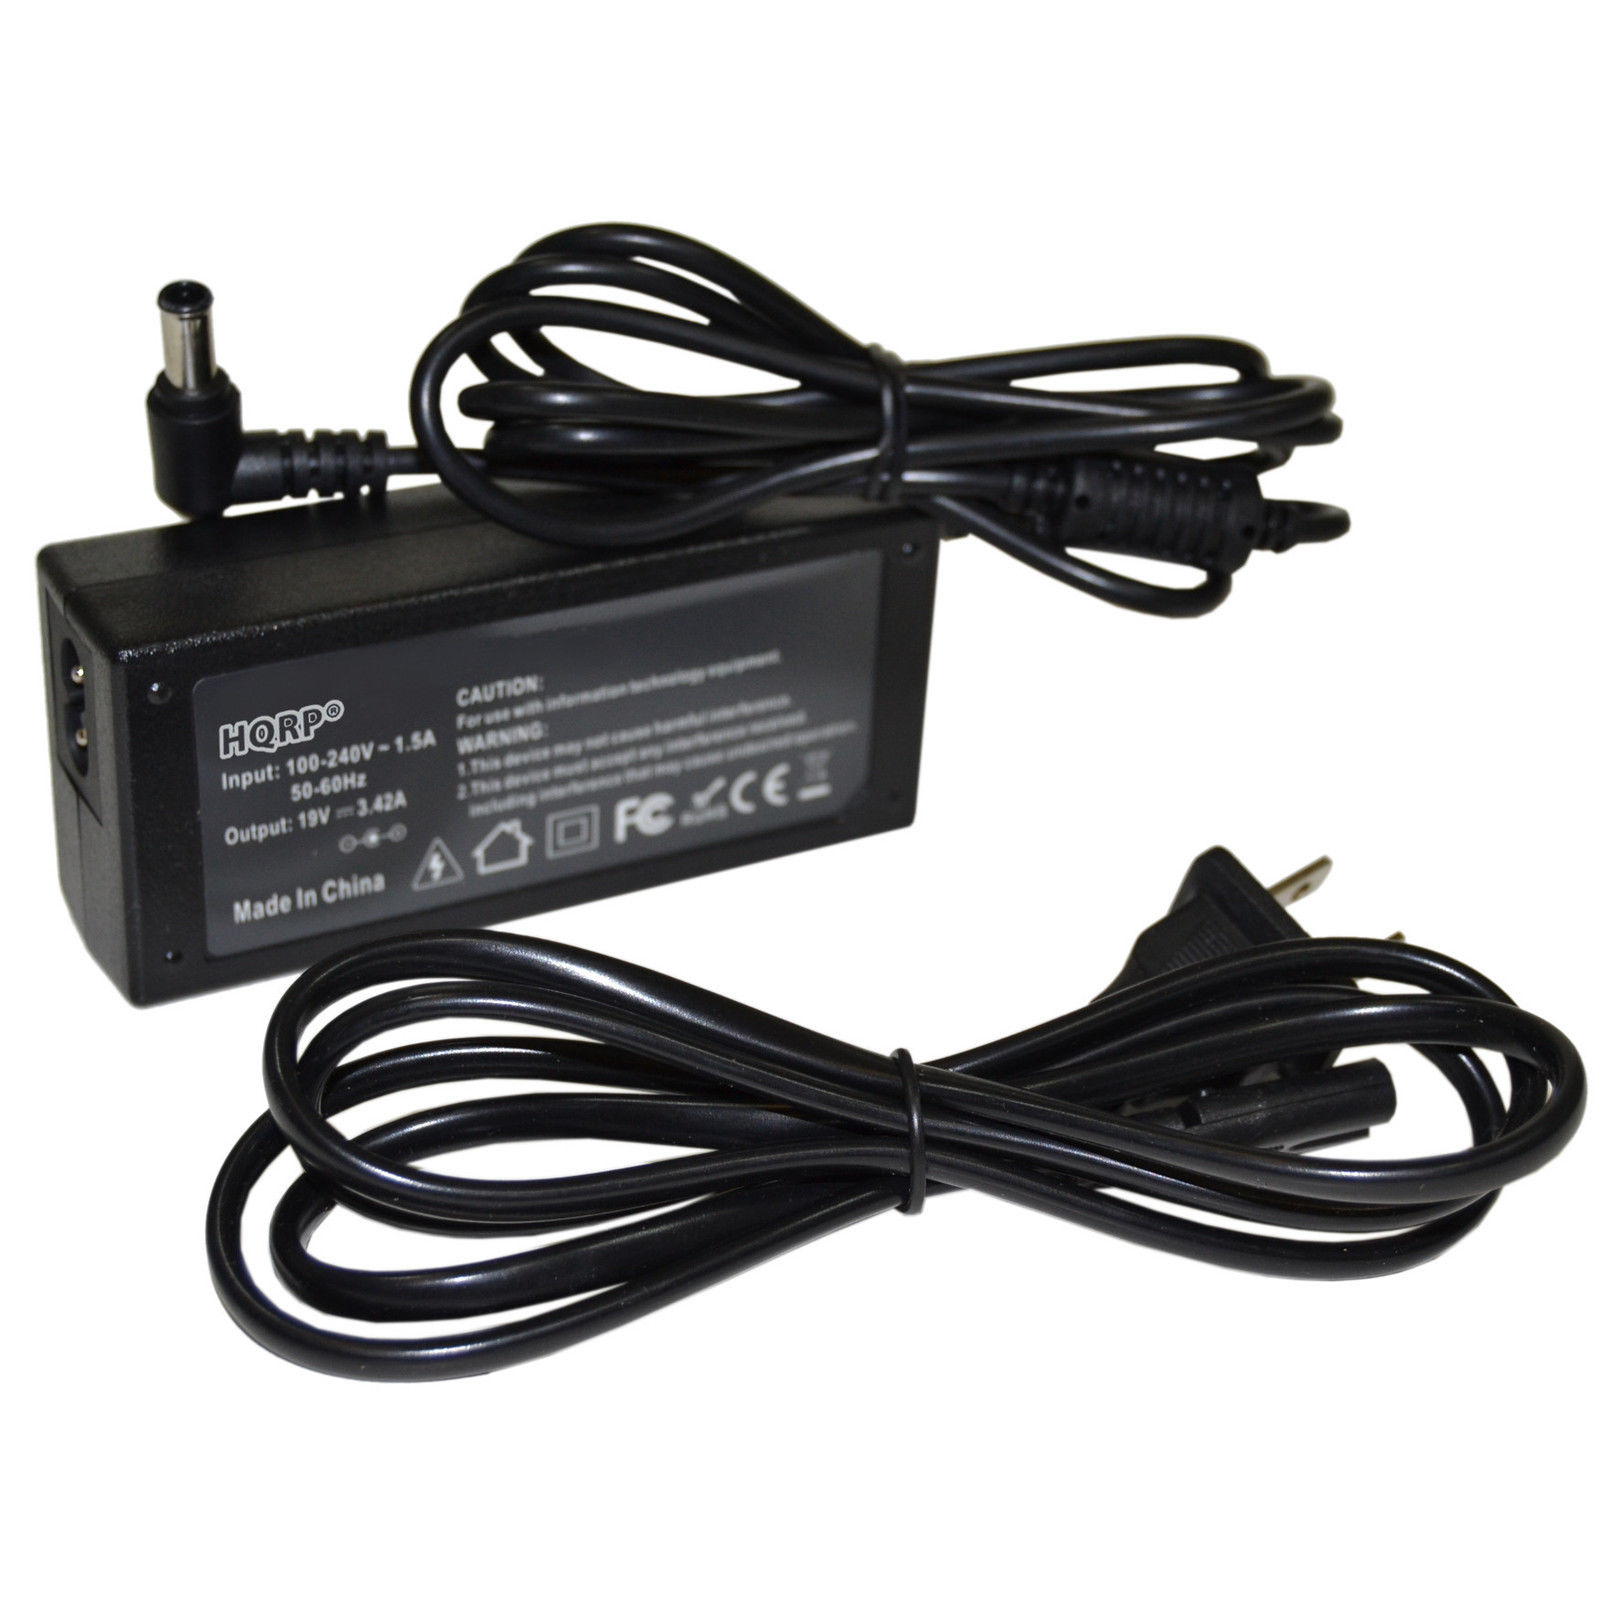 19V AC Power Adapter for LG 19-29 DM E IPS M Series Monitor ADS-40SG-19-3 19025G. E1942C